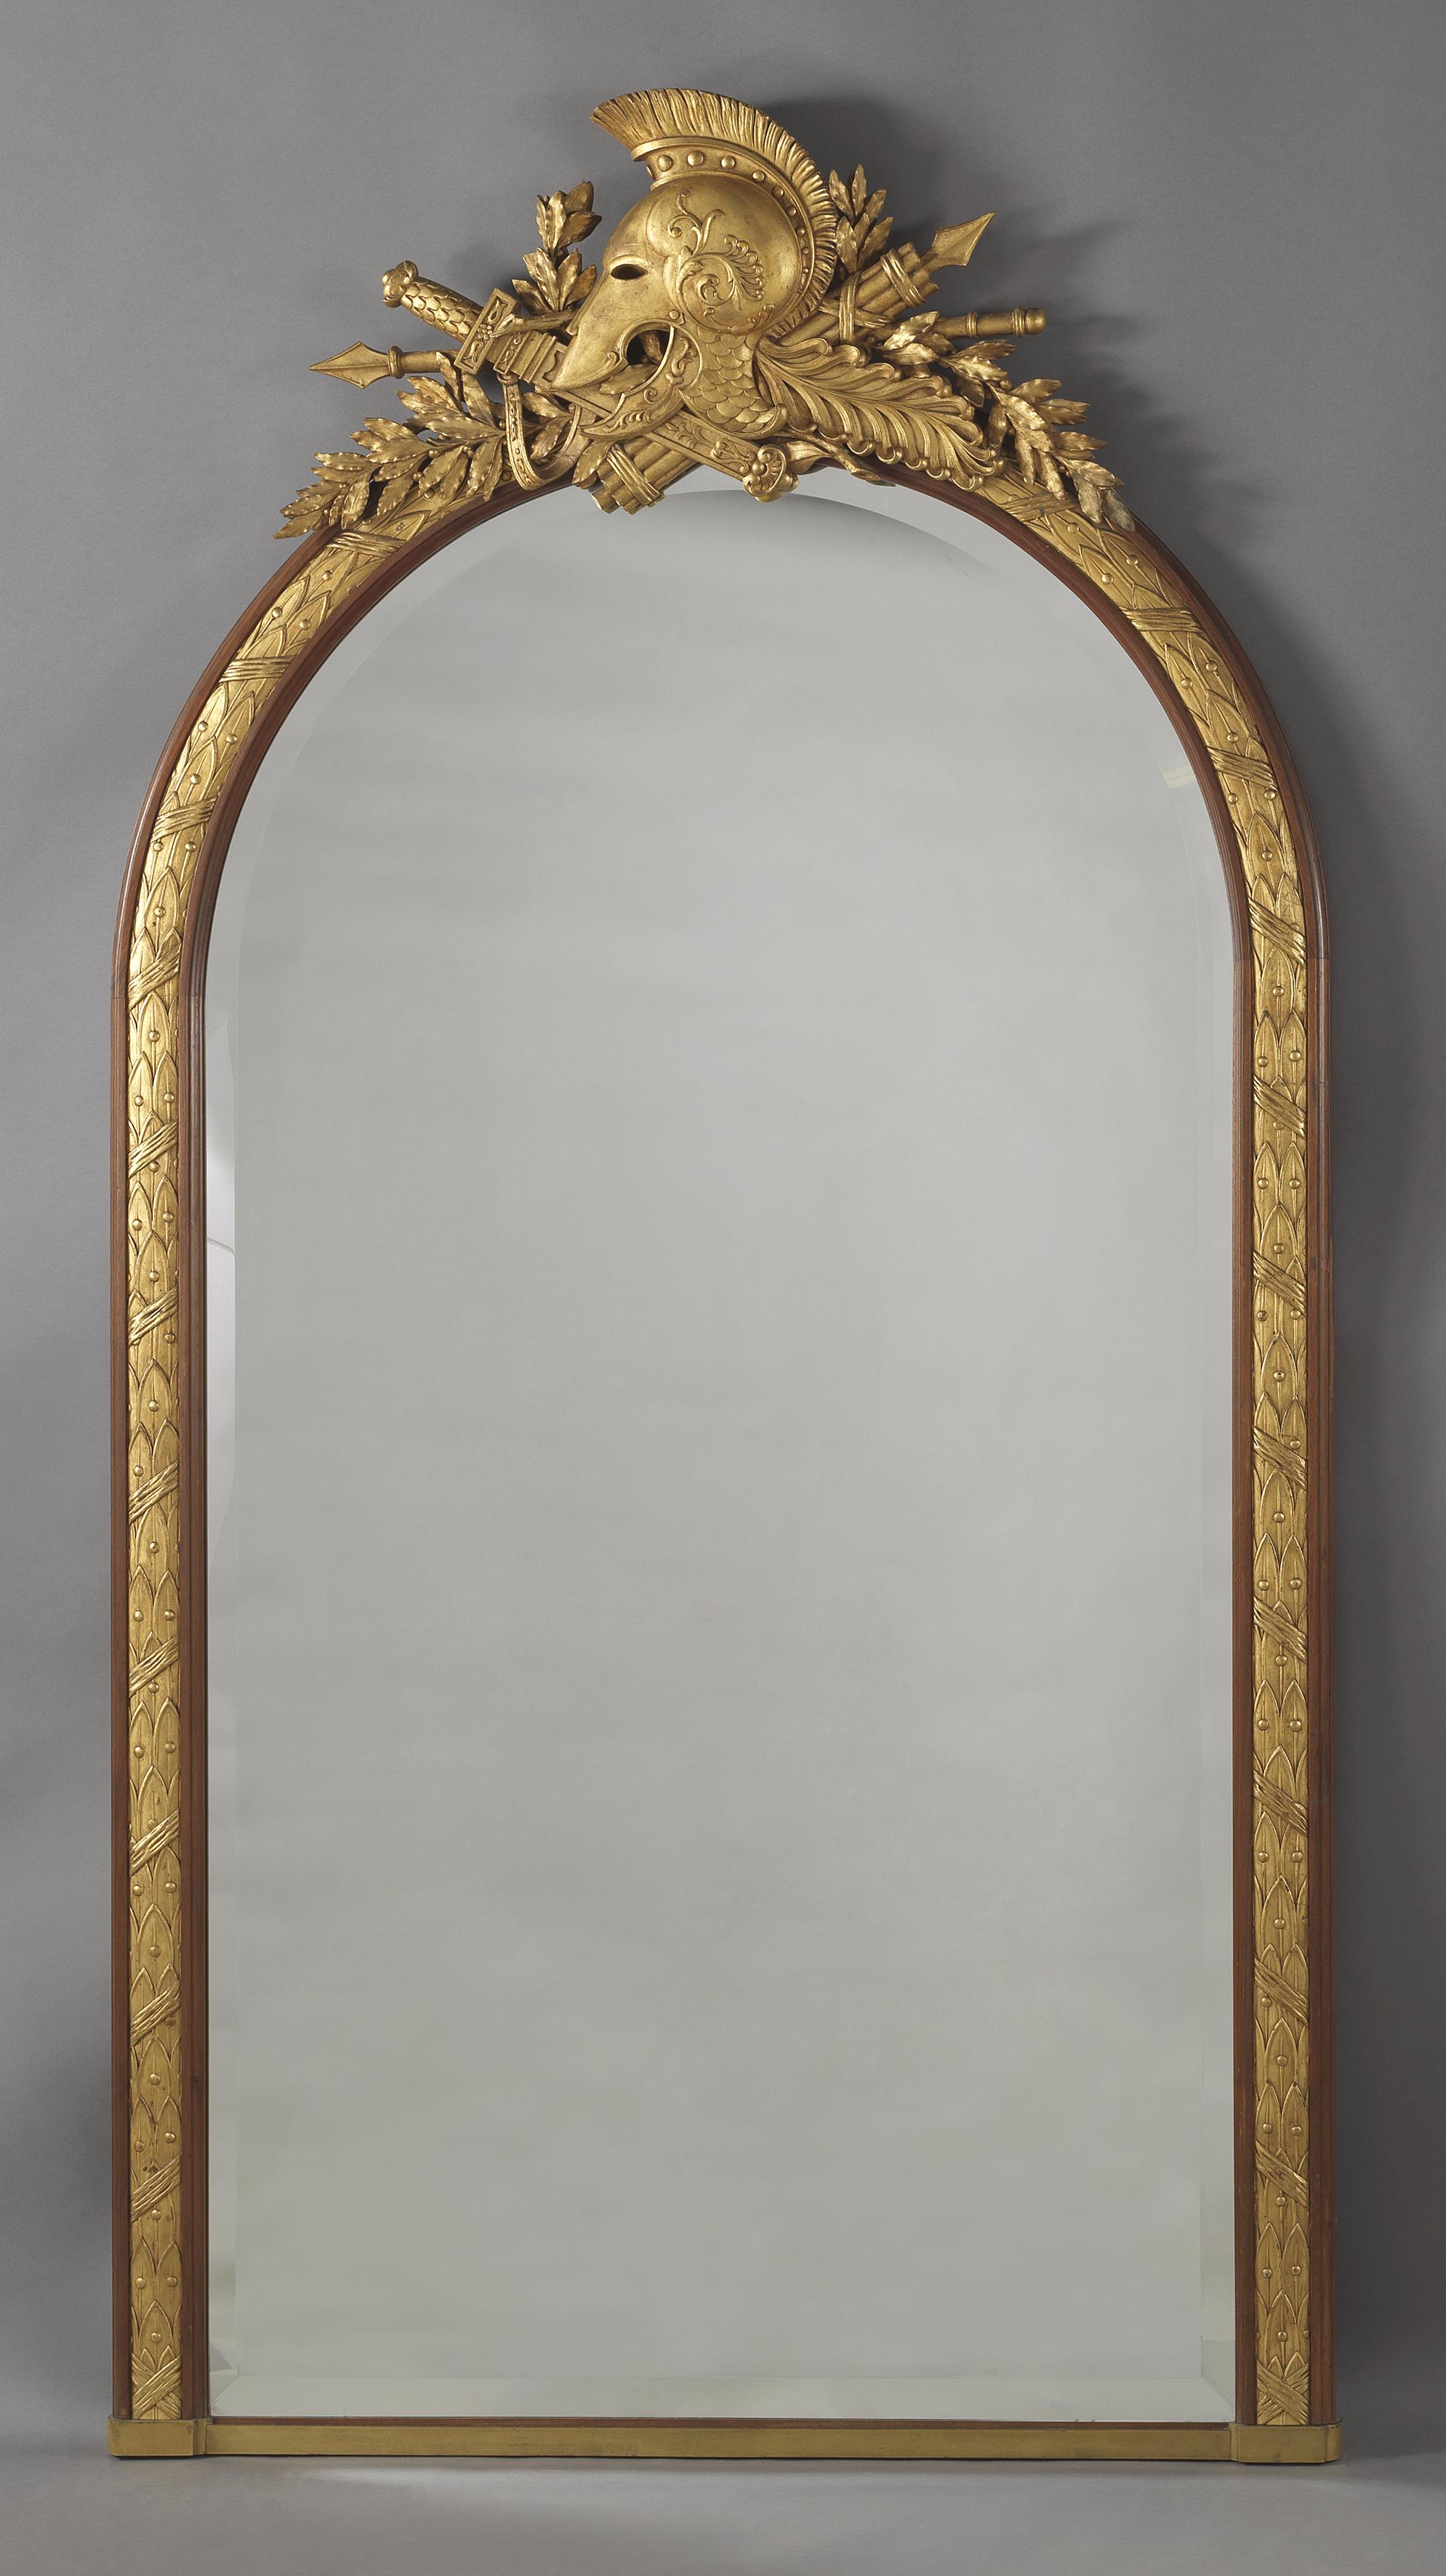 Ein großer Spiegel im Empire-Stil aus teilweise vergoldetem Mahagoni von Alix A Paris.

Frankreich, um 1880. 

Gestempelt „ALIX A PARIS“. 

Der Spiegel hat eine gewölbte, abgeschrägte Platte in einer geformten und mit Bändern versehenen